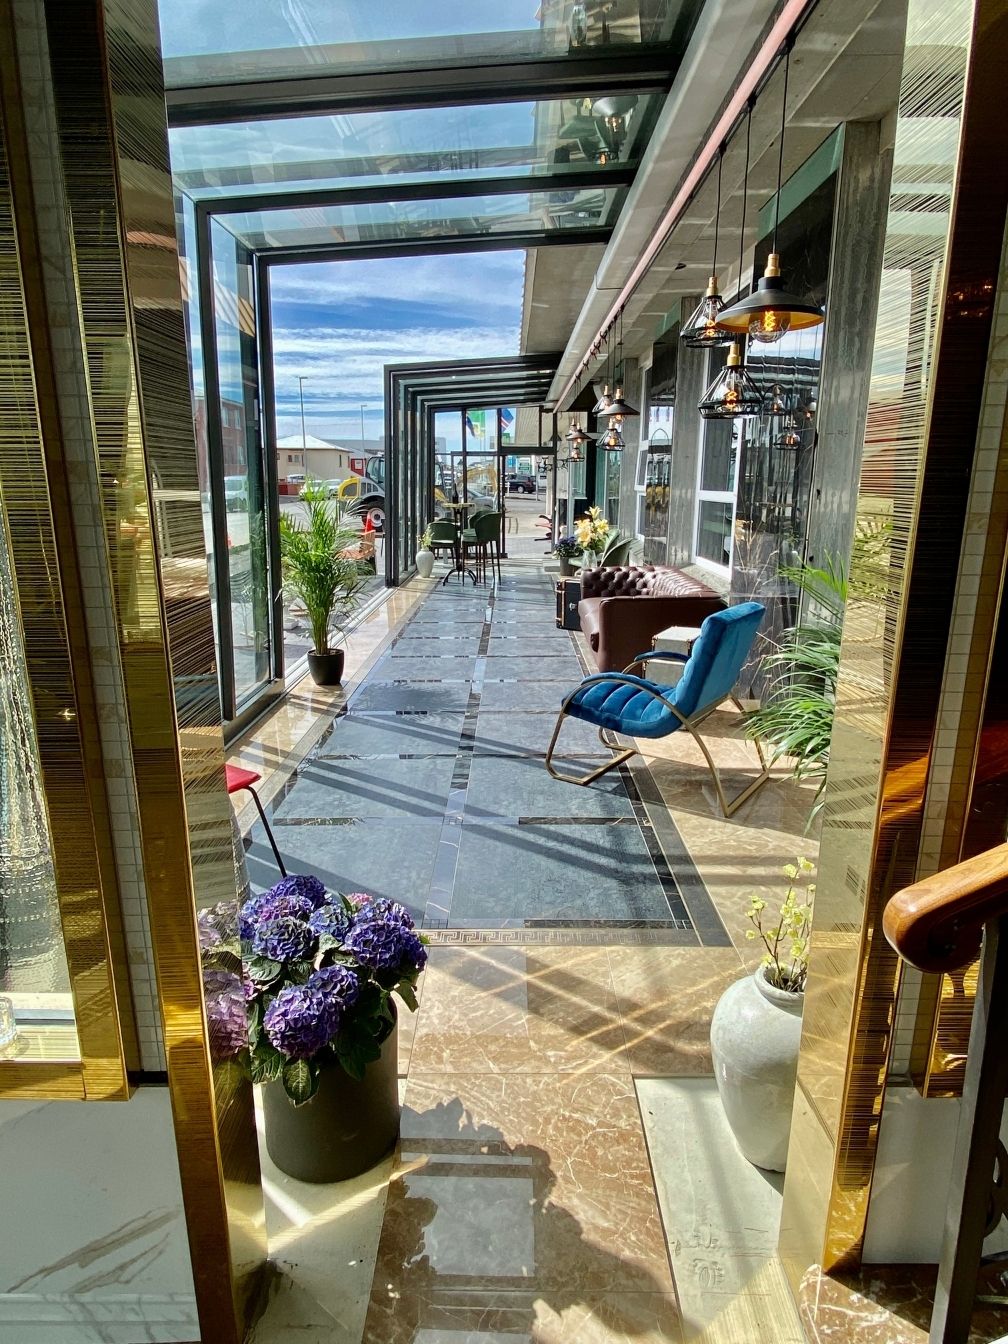 Hotel Keflavik, Iceland. Contemporary glasshouse